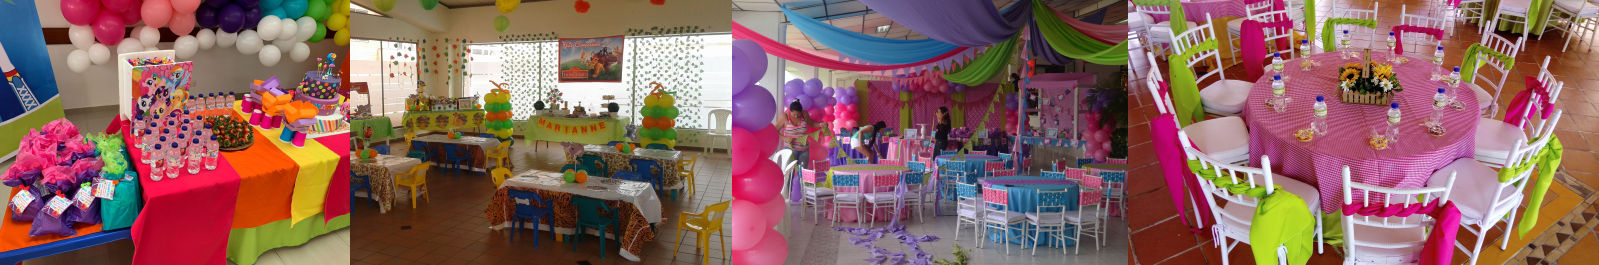 decoracion con globos bogota eventos infantiles y empresariales